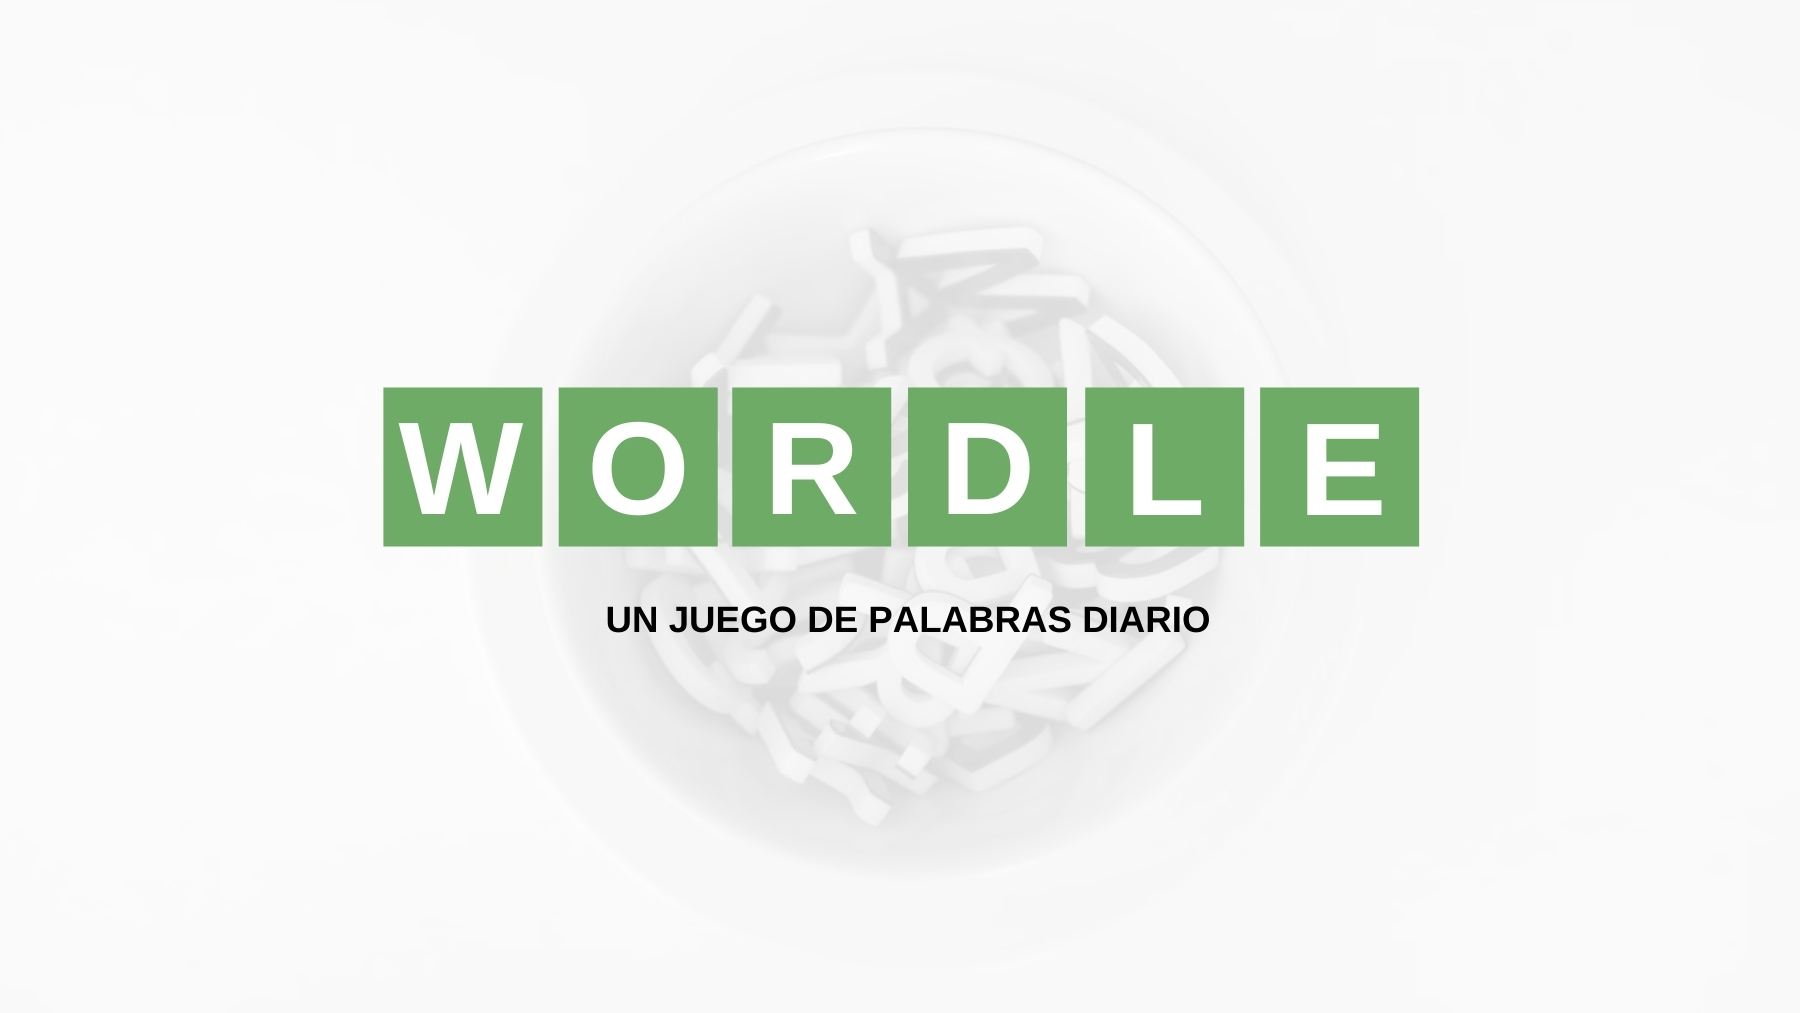 Solución palabra Wordle español, científico y con tildes hoy, viernes 15 de julio de 2022